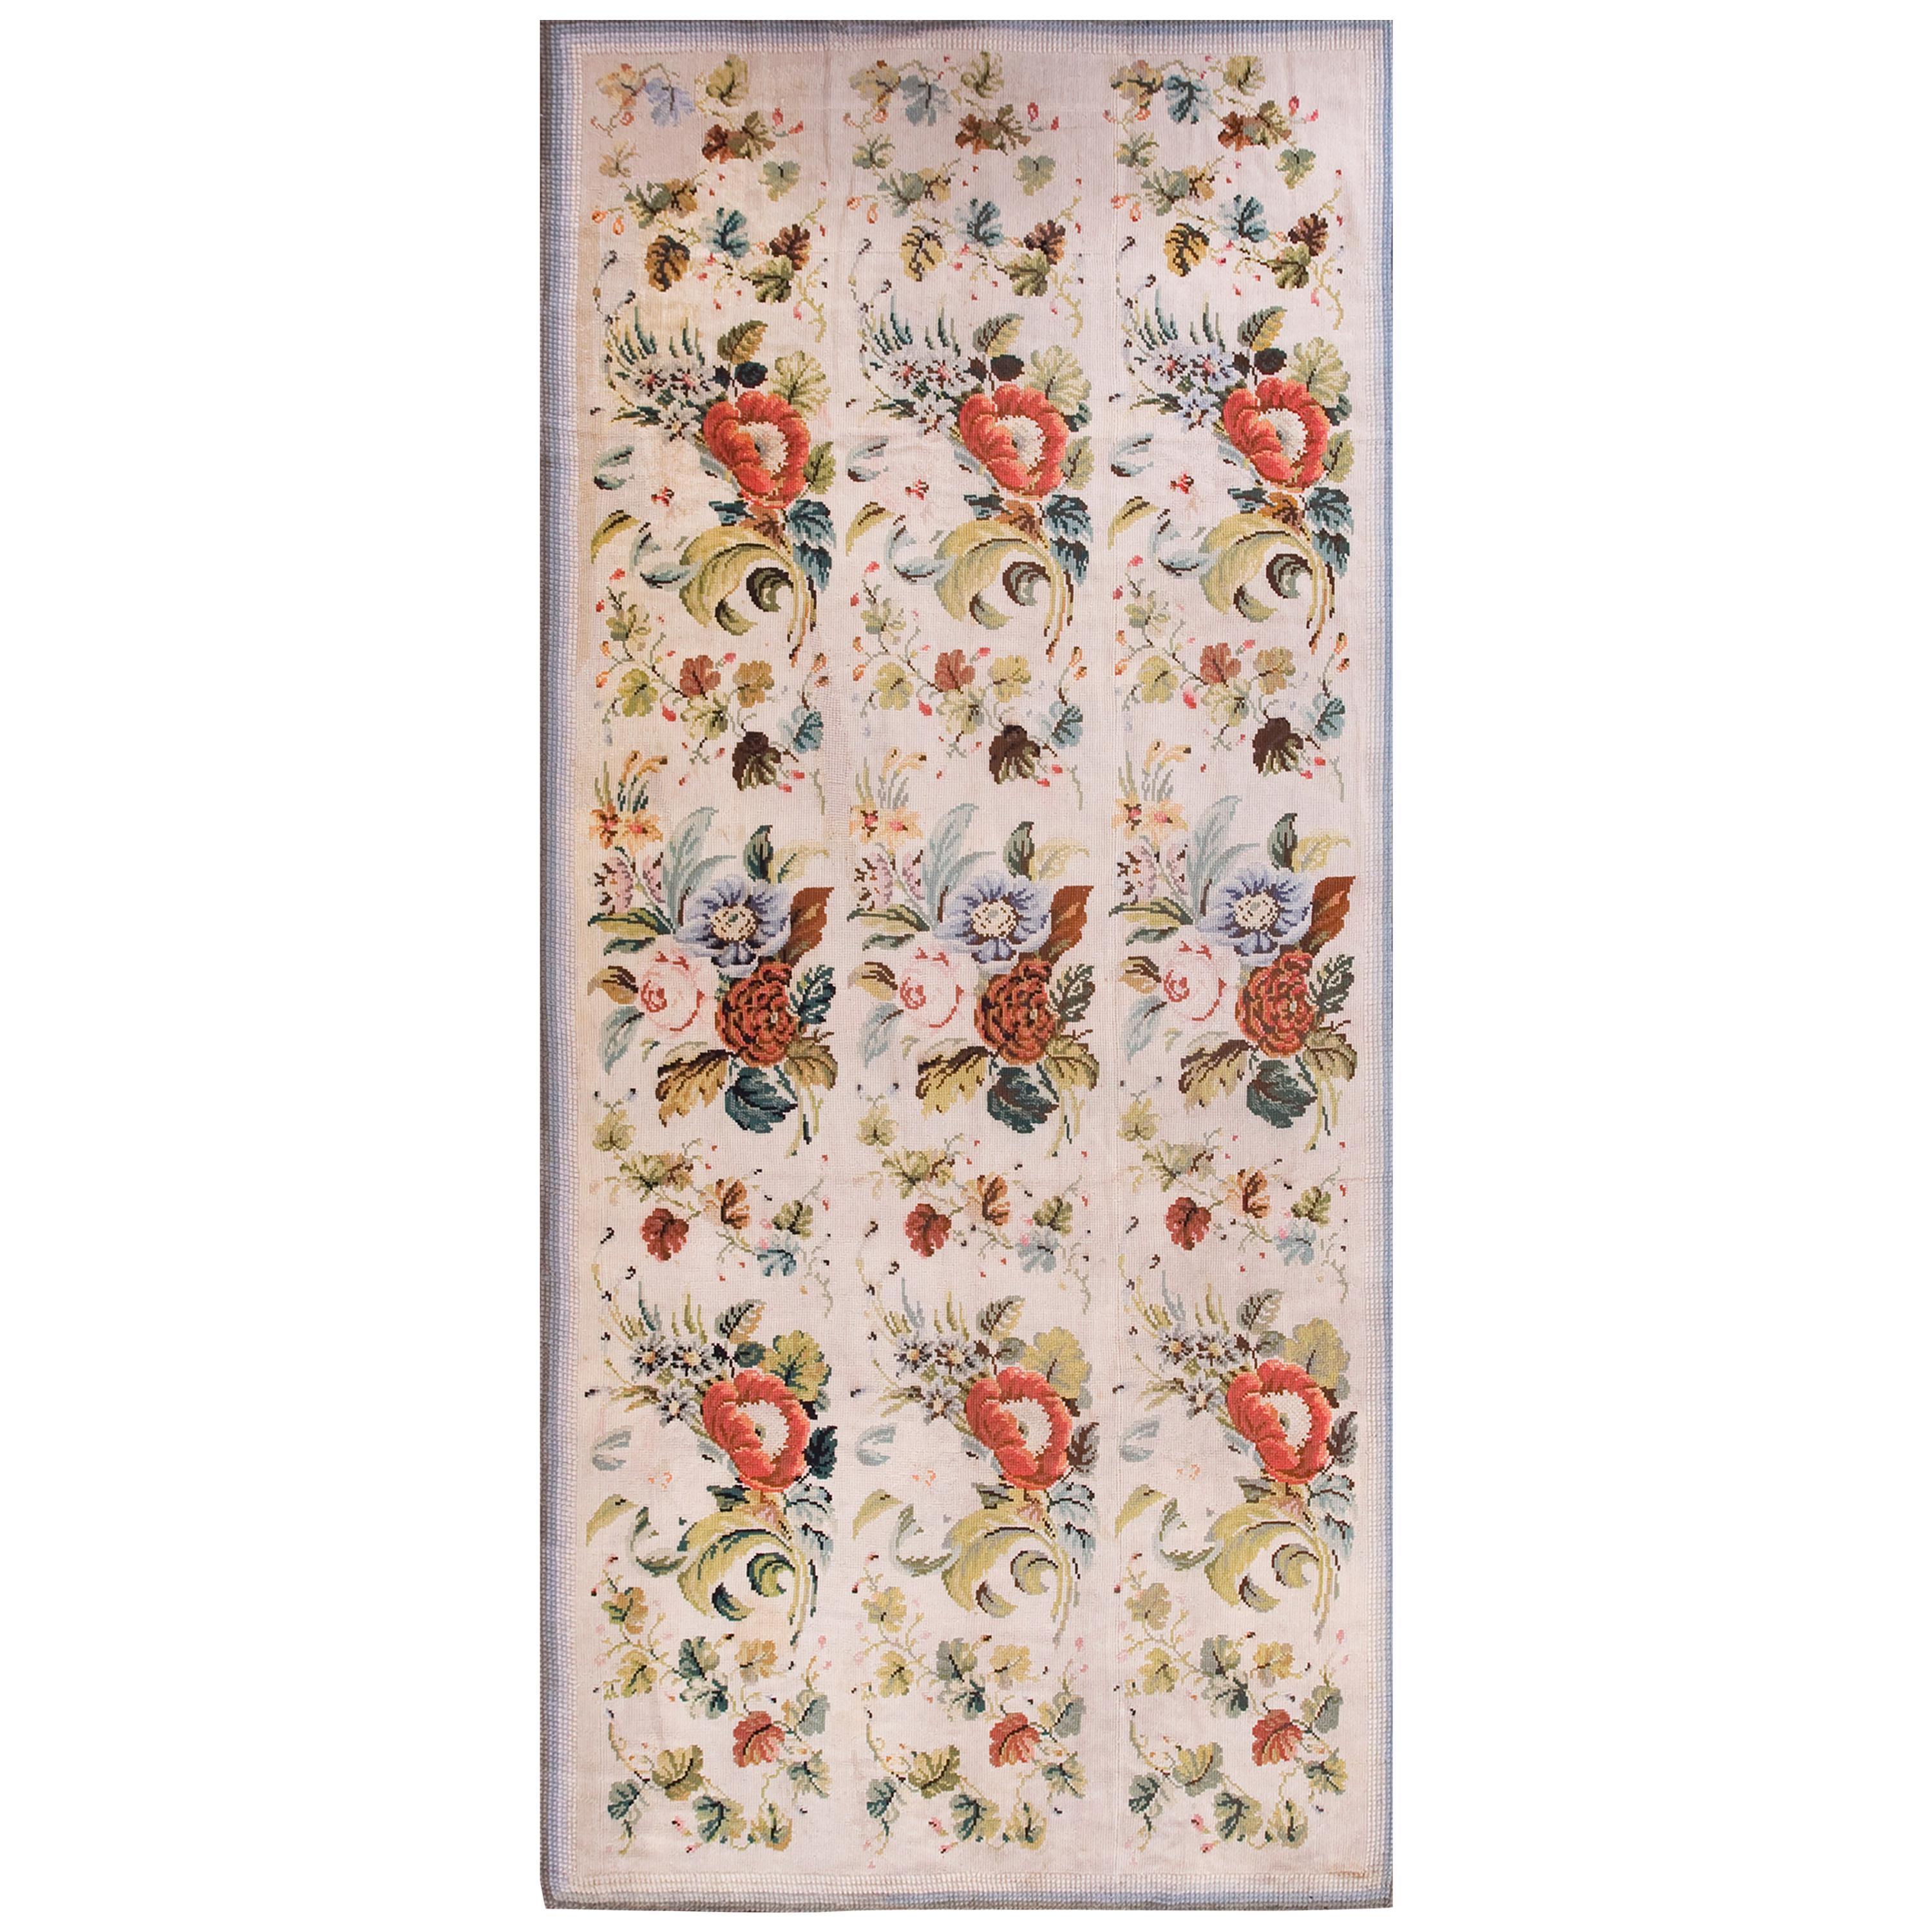 Englischer Gobelinstickerei-Teppich aus dem 19. Jahrhundert ( 5'9" x 12'8 - 175 x 386)